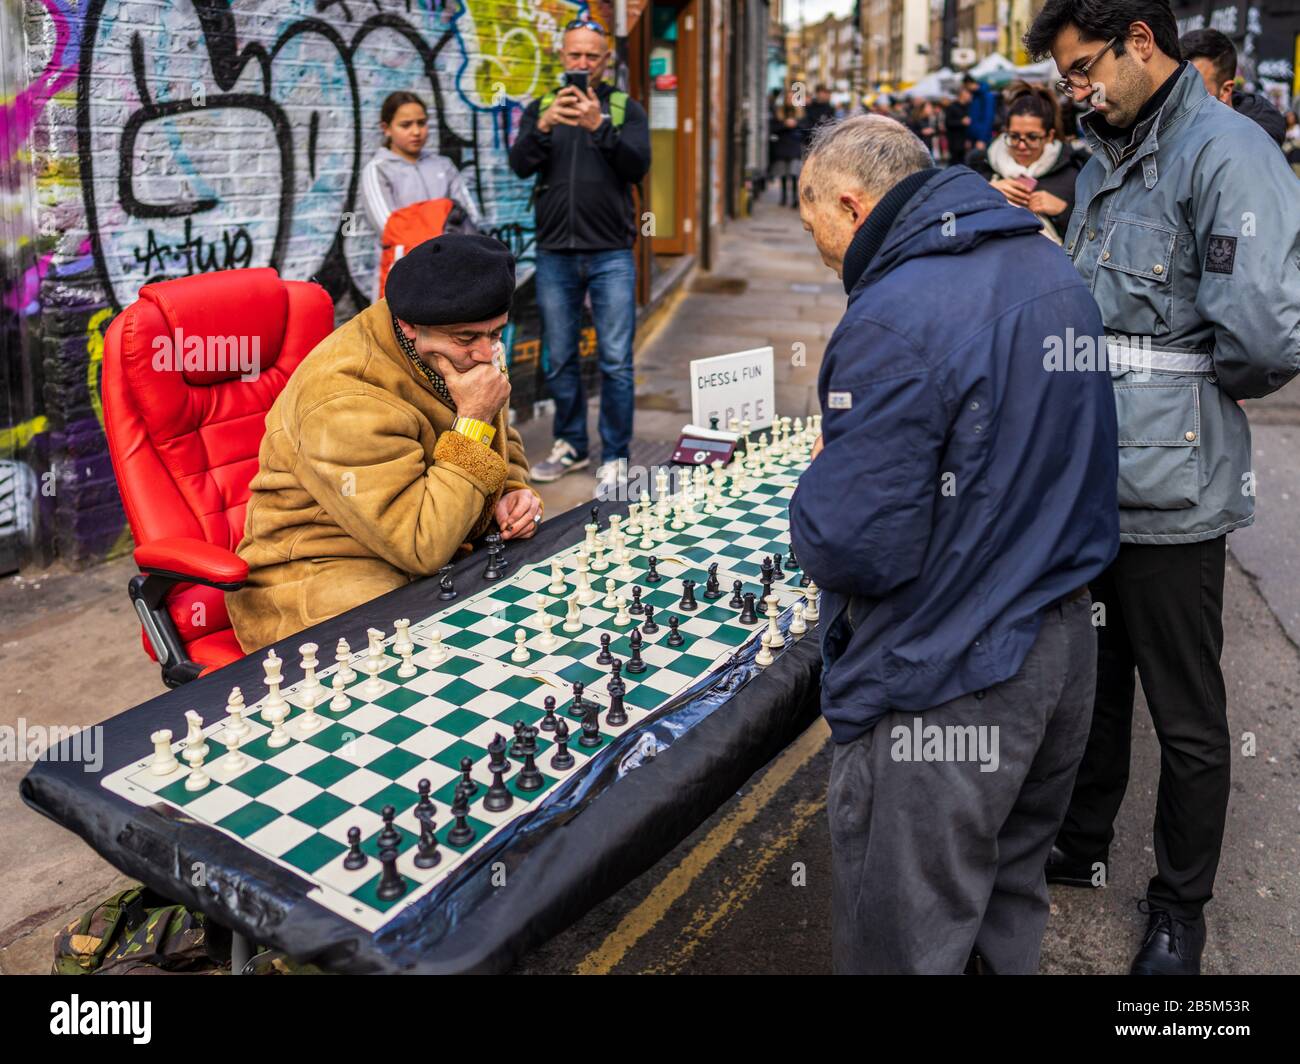 Brick Lane Schach - ein Schachspieler spielt bis zu 4 parallele Spiele mit Touristen und Passanten in die beliebten Londoner Brick Lane Markt am Sonntag Stockfoto